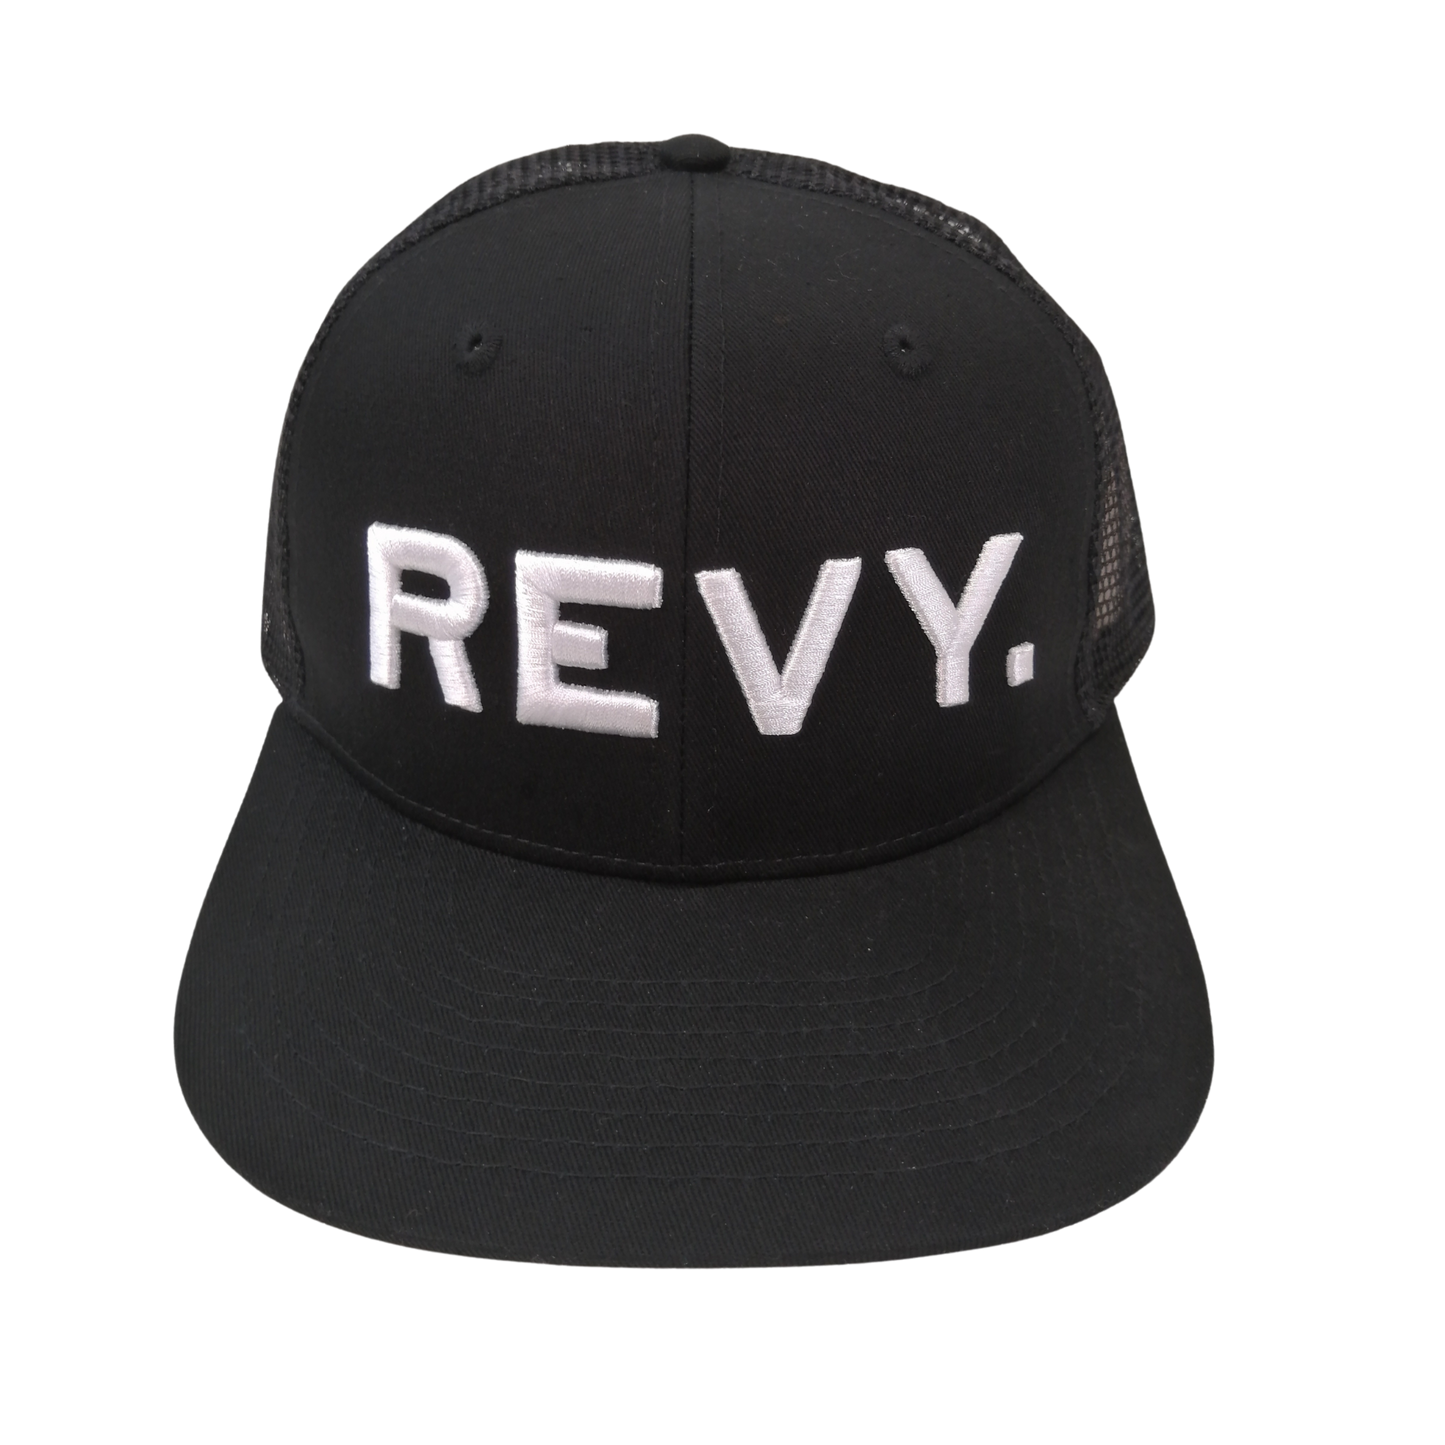 REVY. HAT, TRUCKER